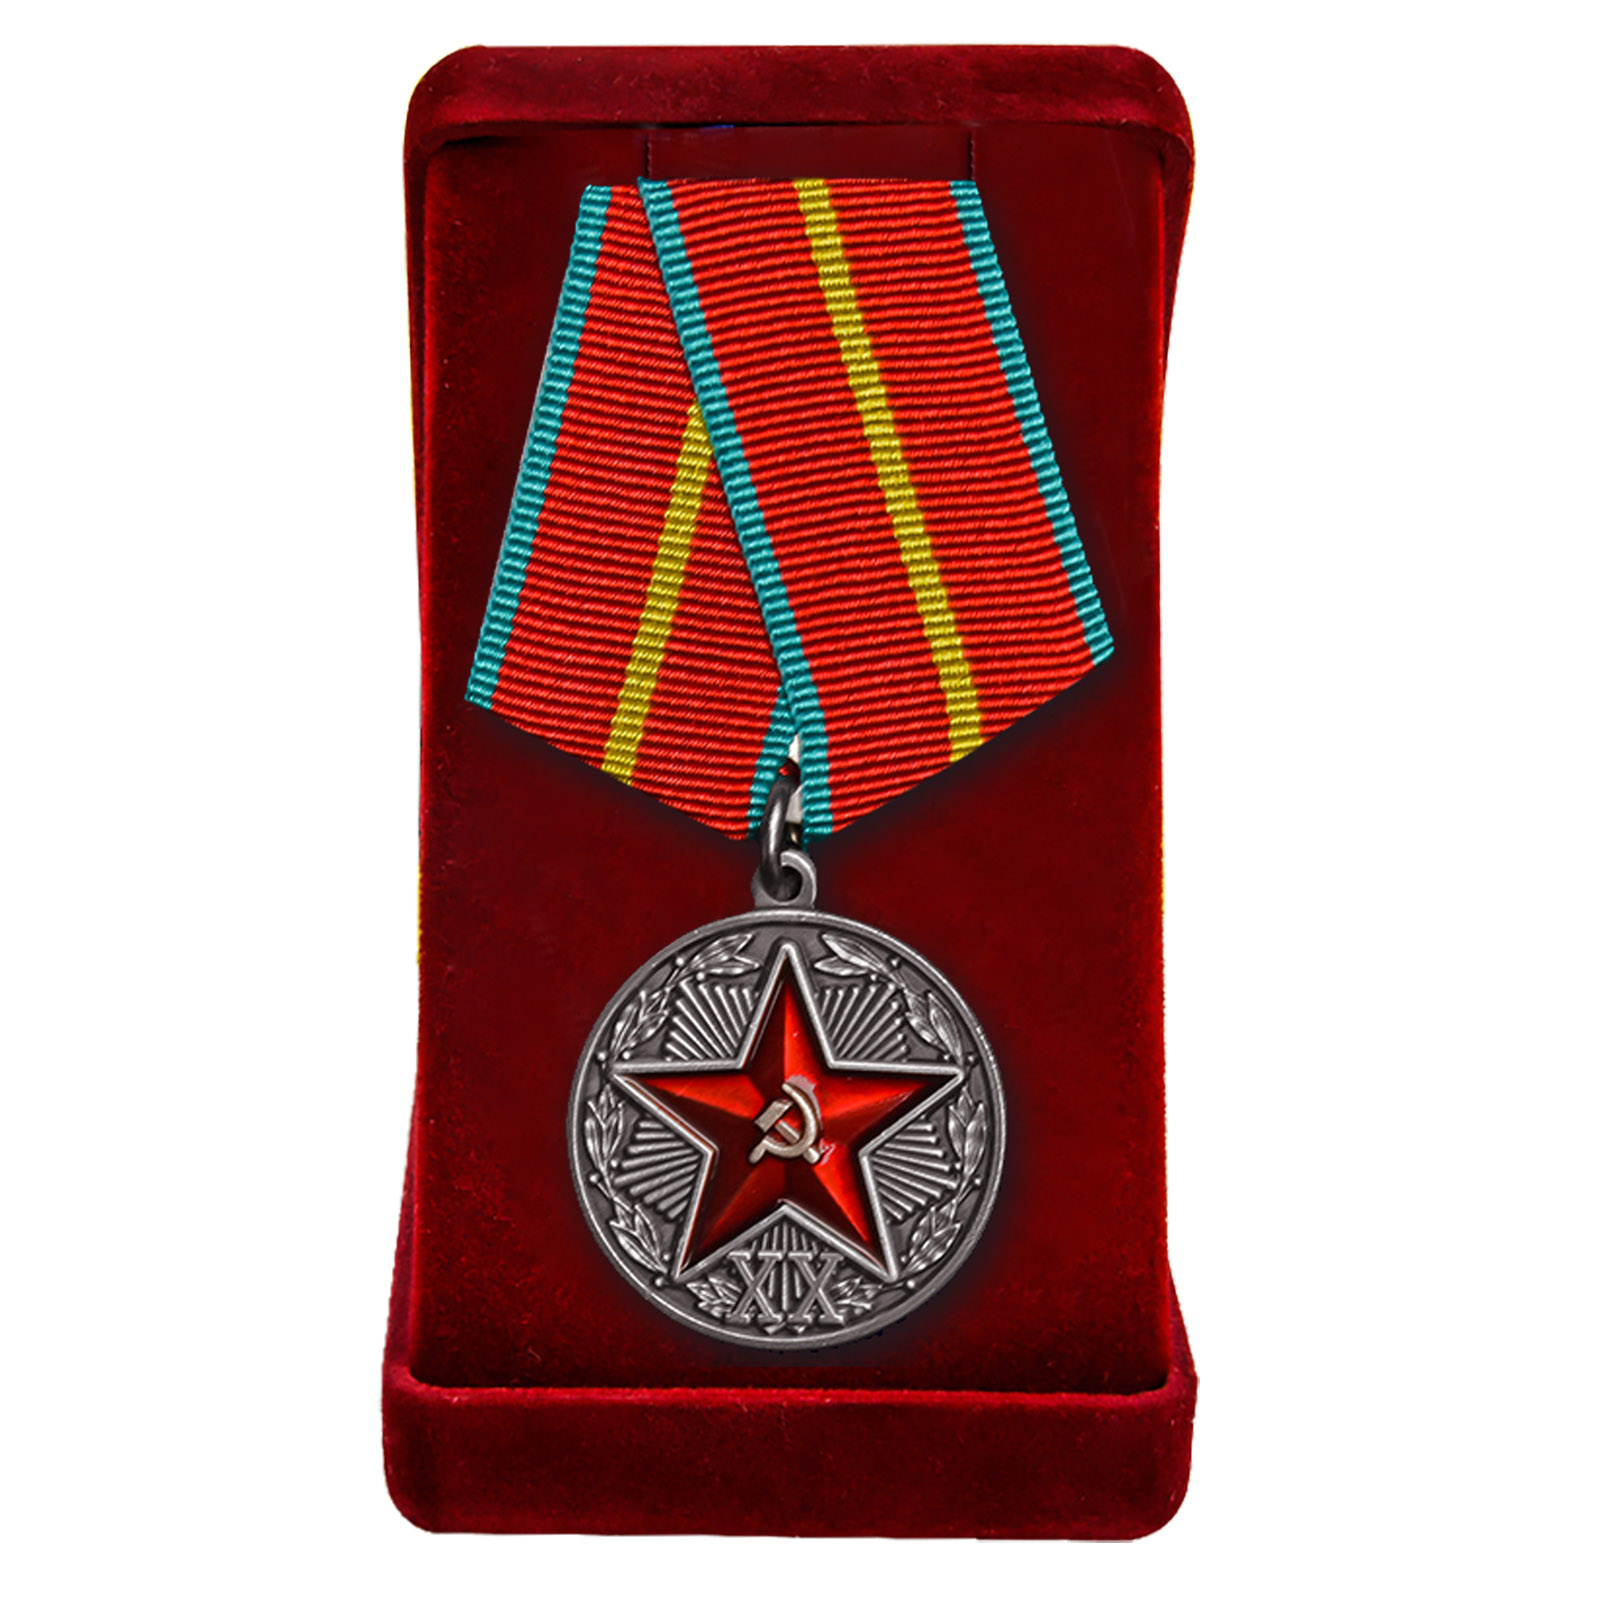 Муляж медали "За безупречную службу" КГБ СССР первой степени